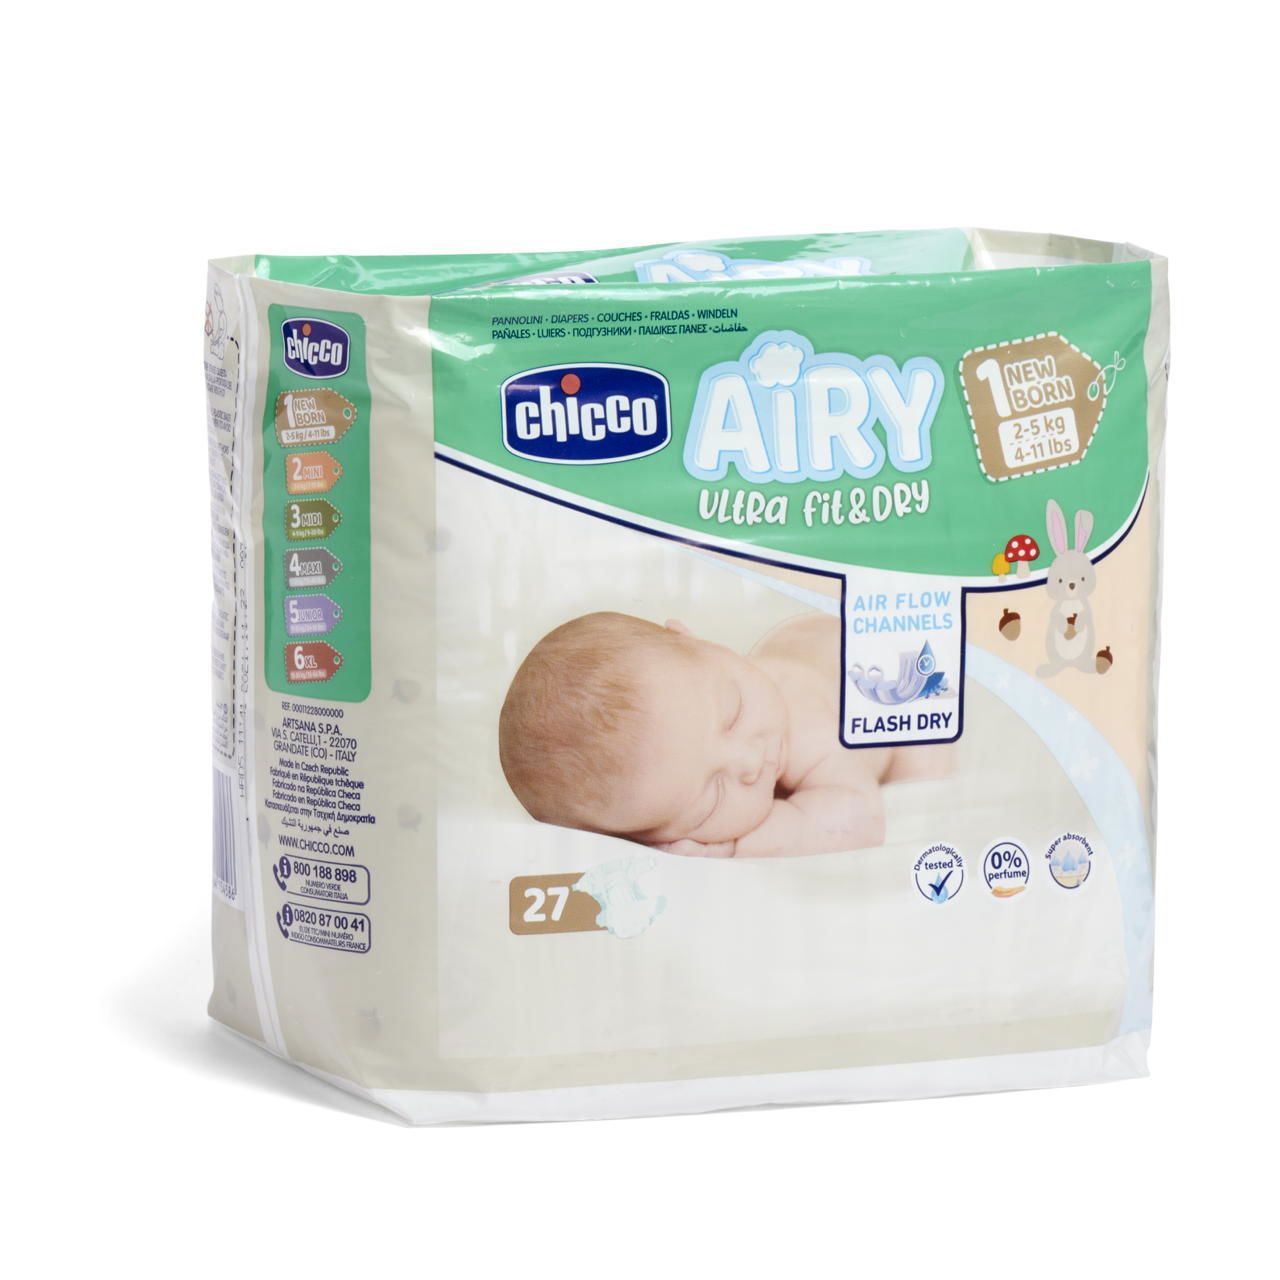 Pannolini taglia 1 Newborn - Airy Ultra Fit&Dry image number 0